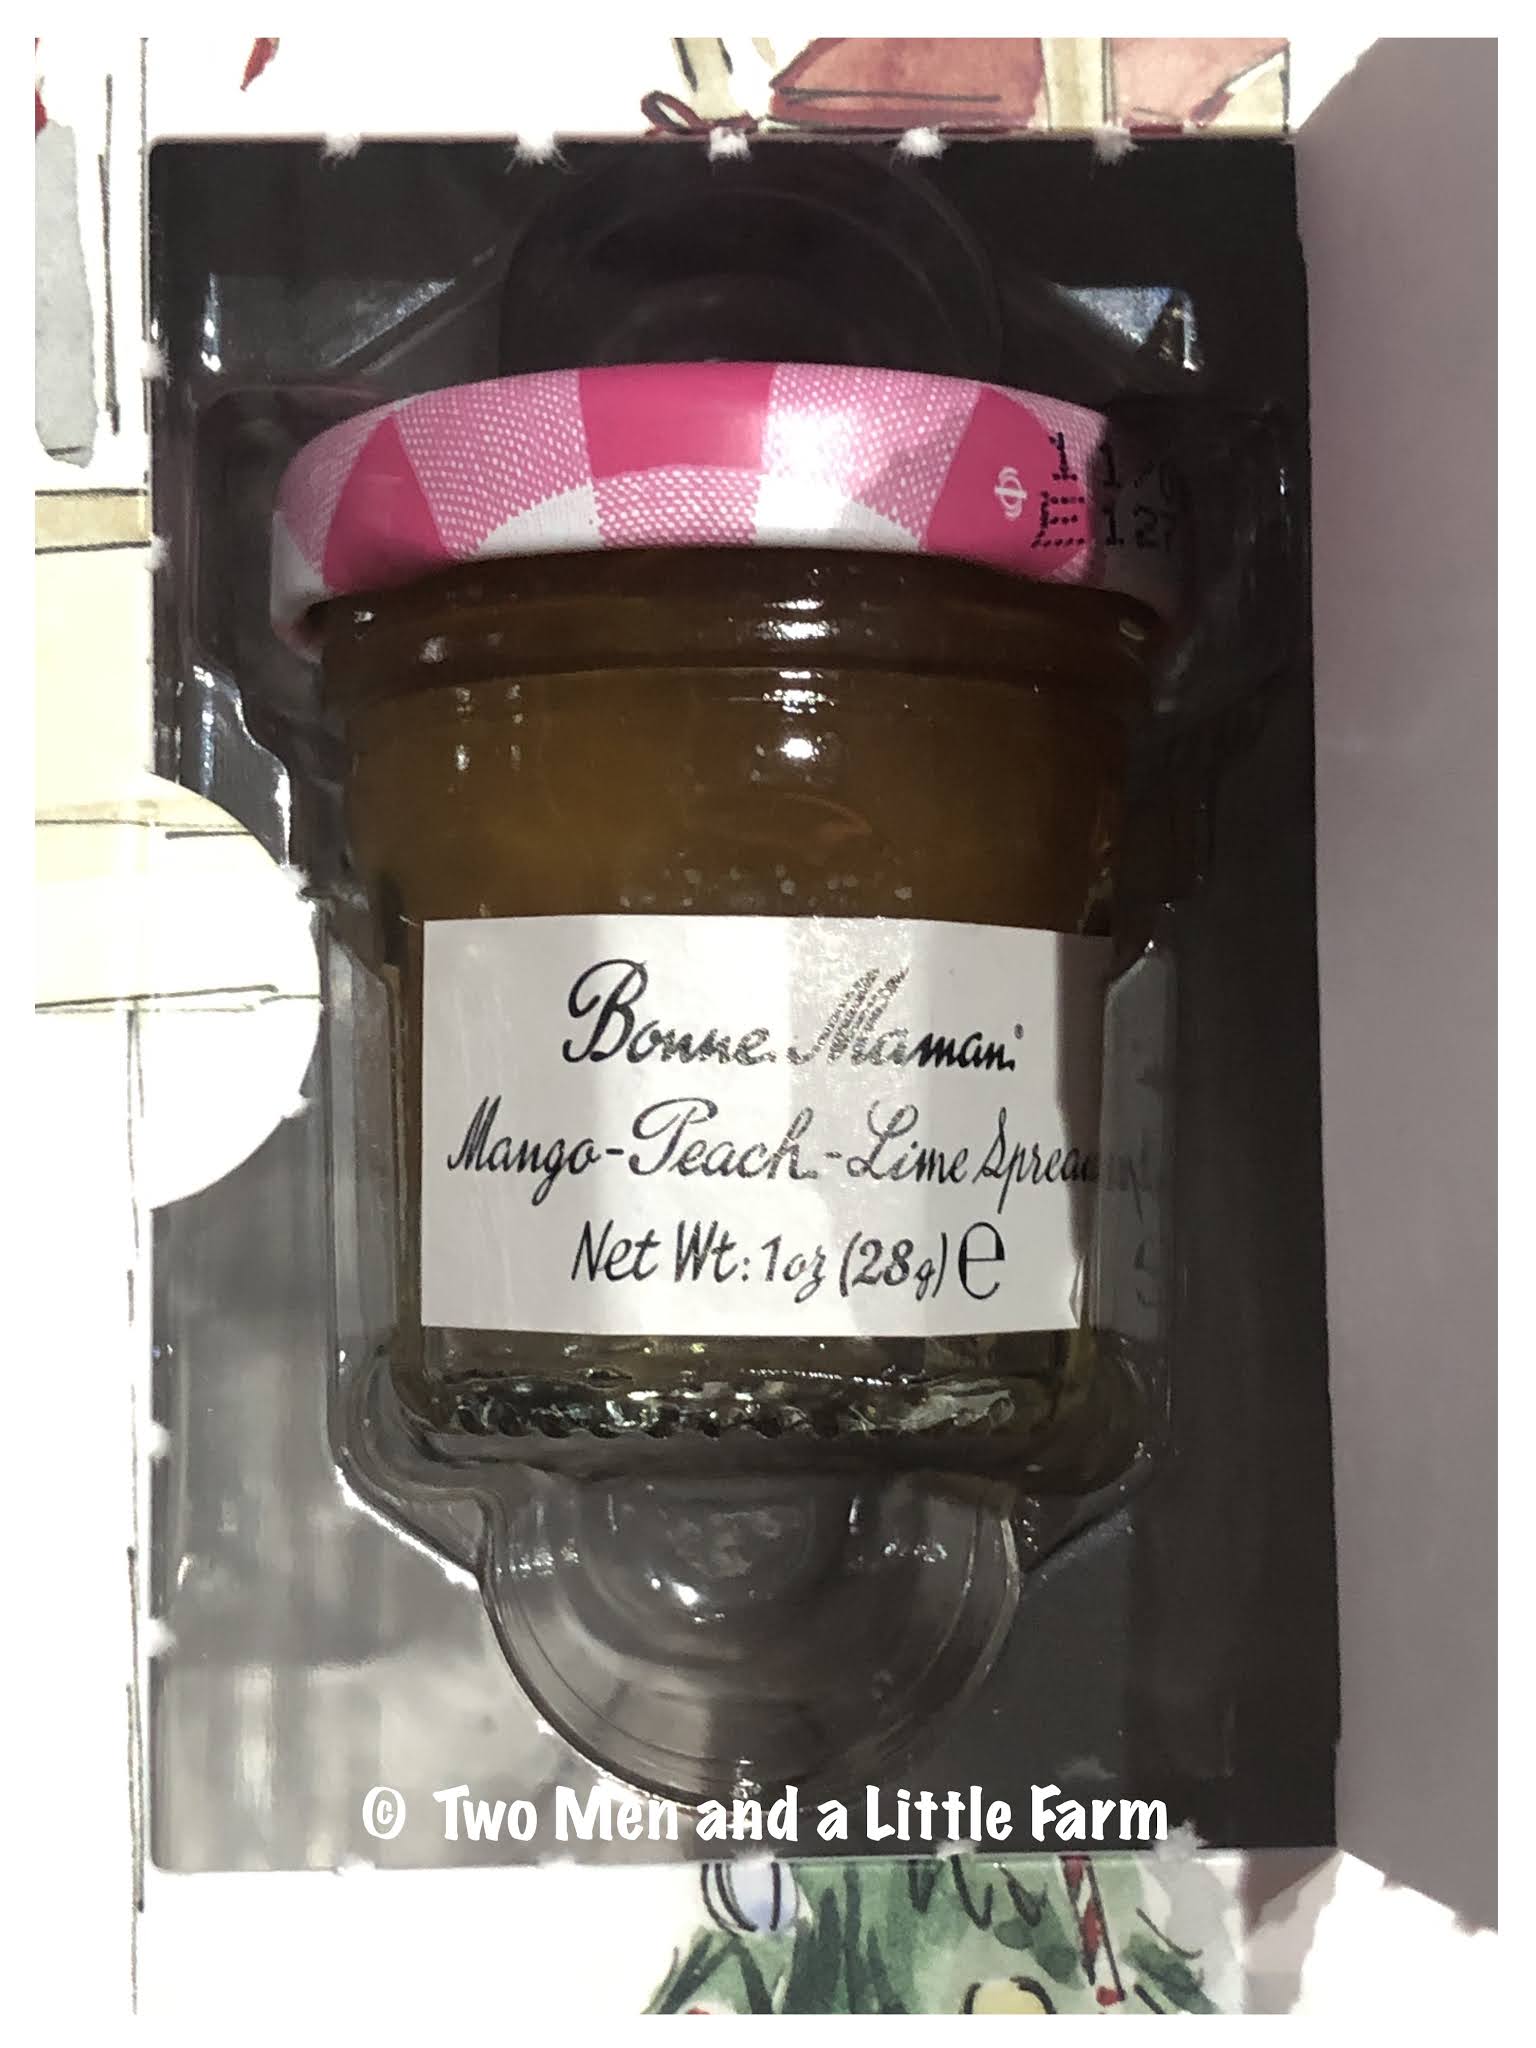 The unique second lives of Bonne Maman jars